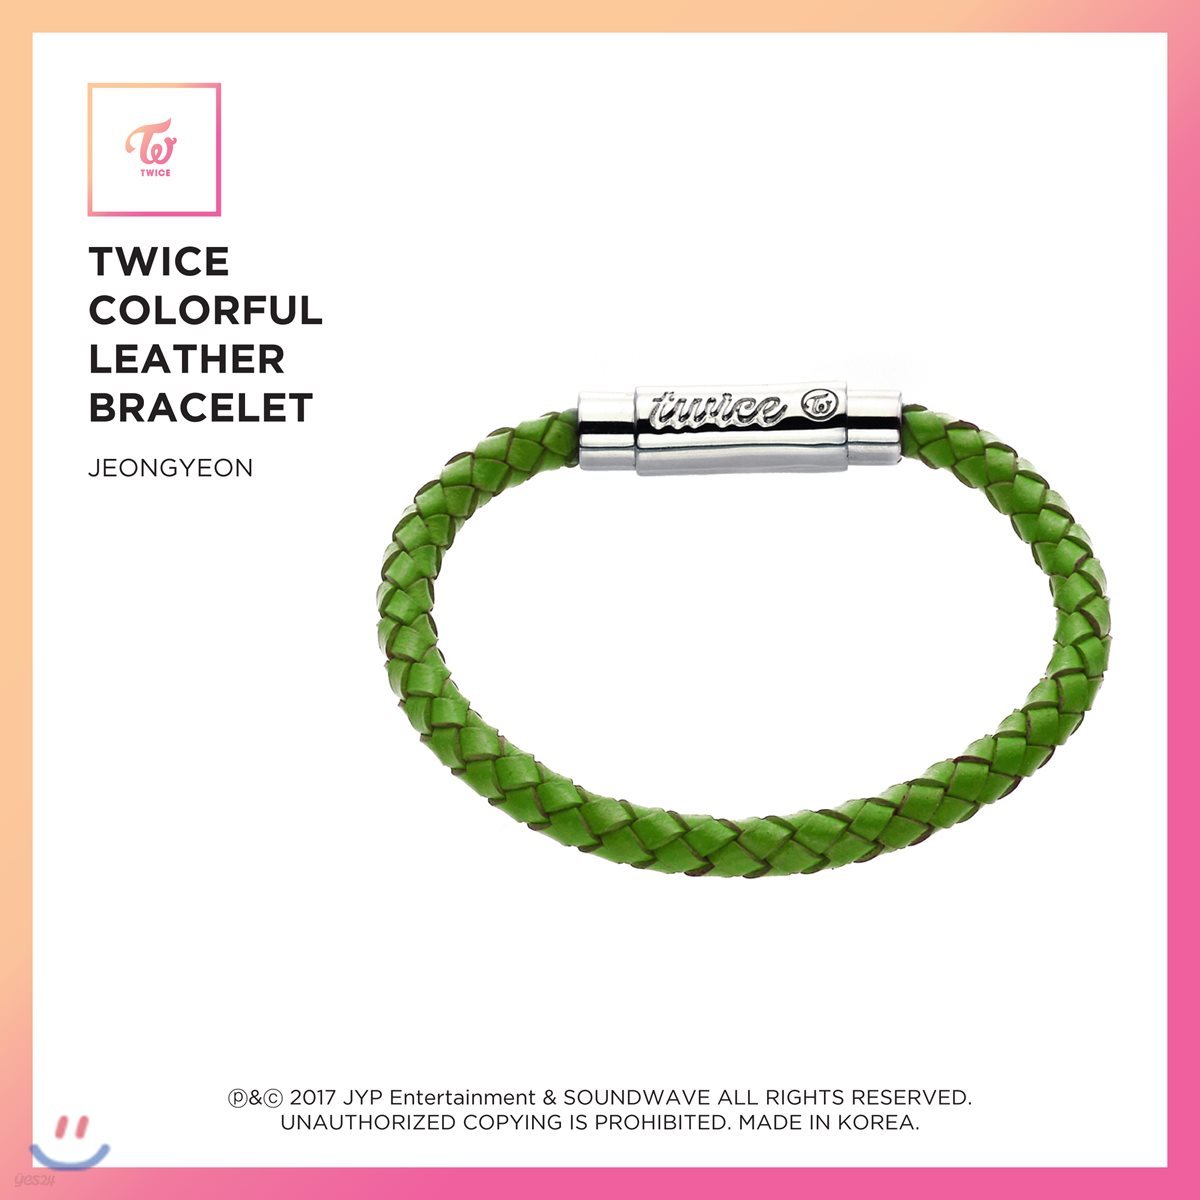 트와이스 (TWICE) - TWICE Colorful Leather Bracelet [Jeongyeon]